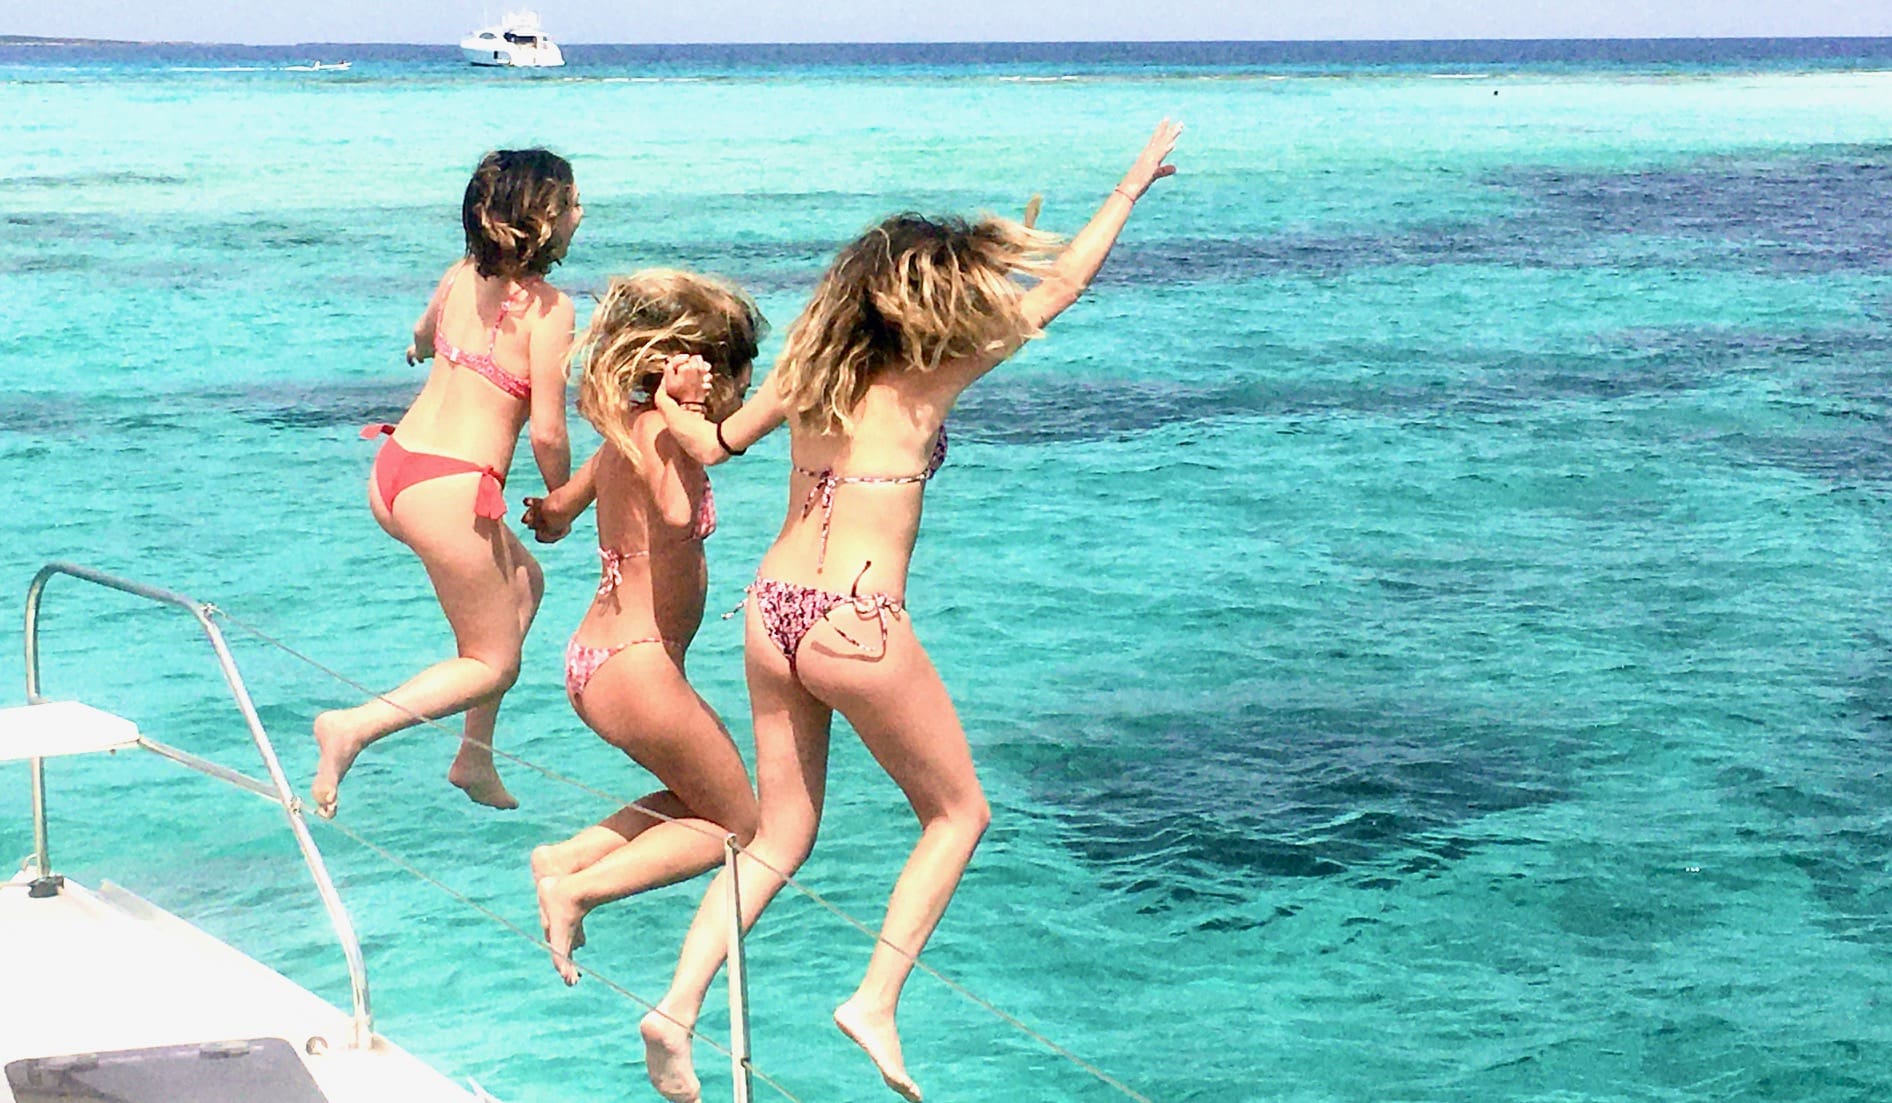 Catamaran day Trip, girls jumping